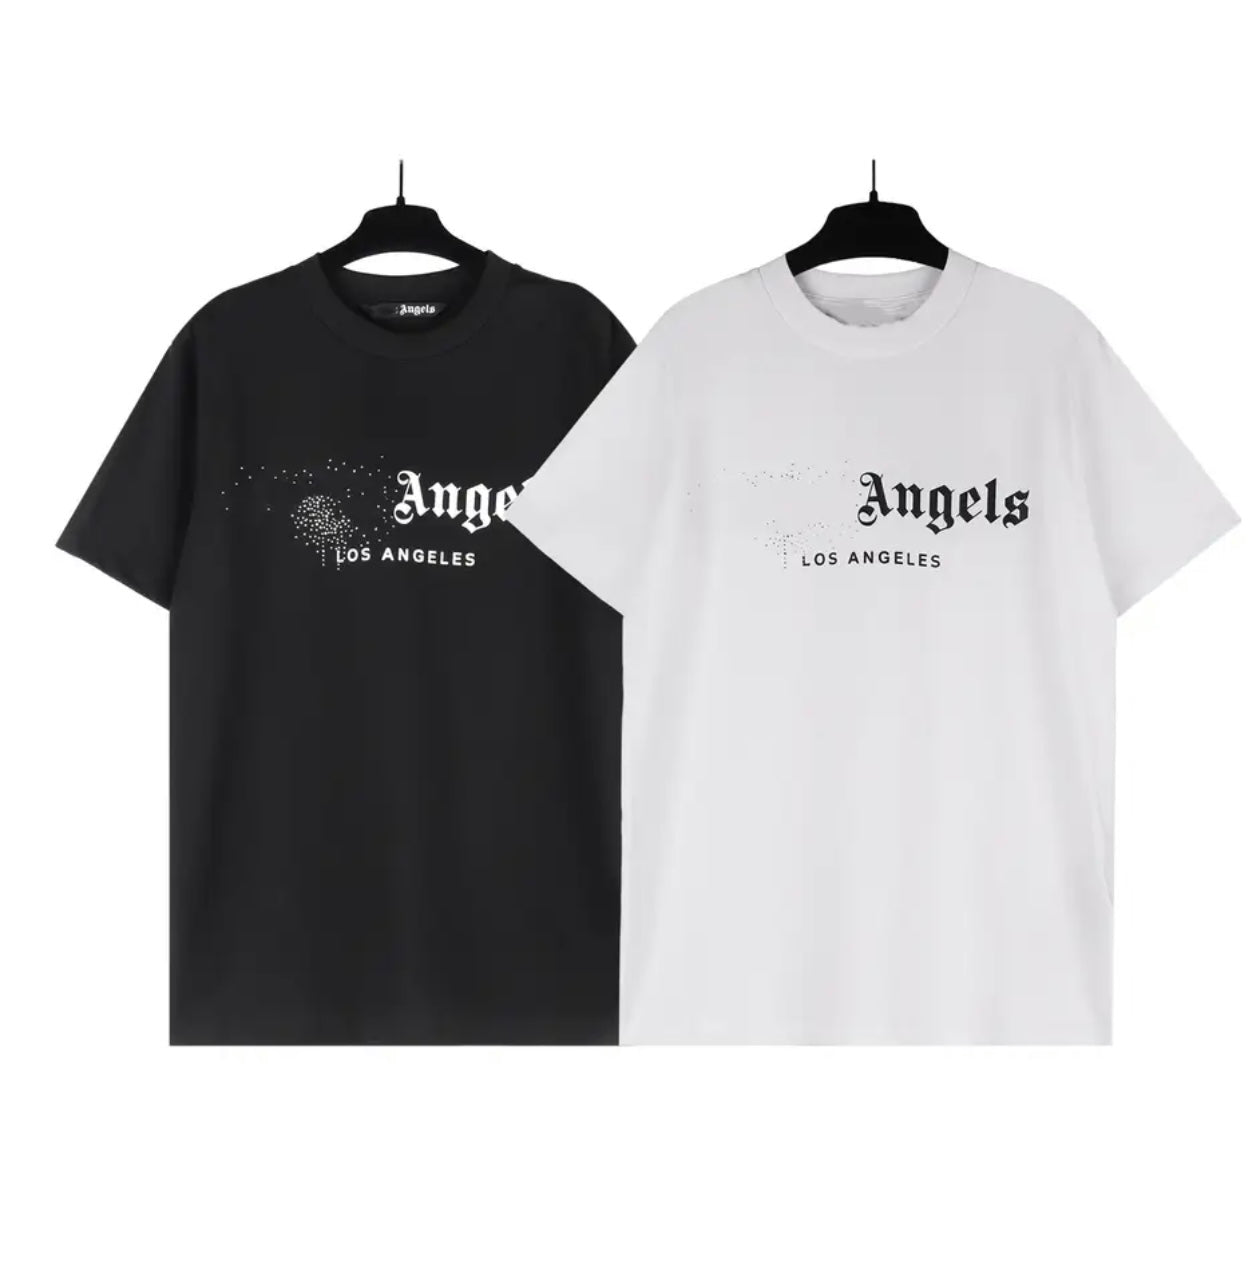 angels shirt – StylesByBritz